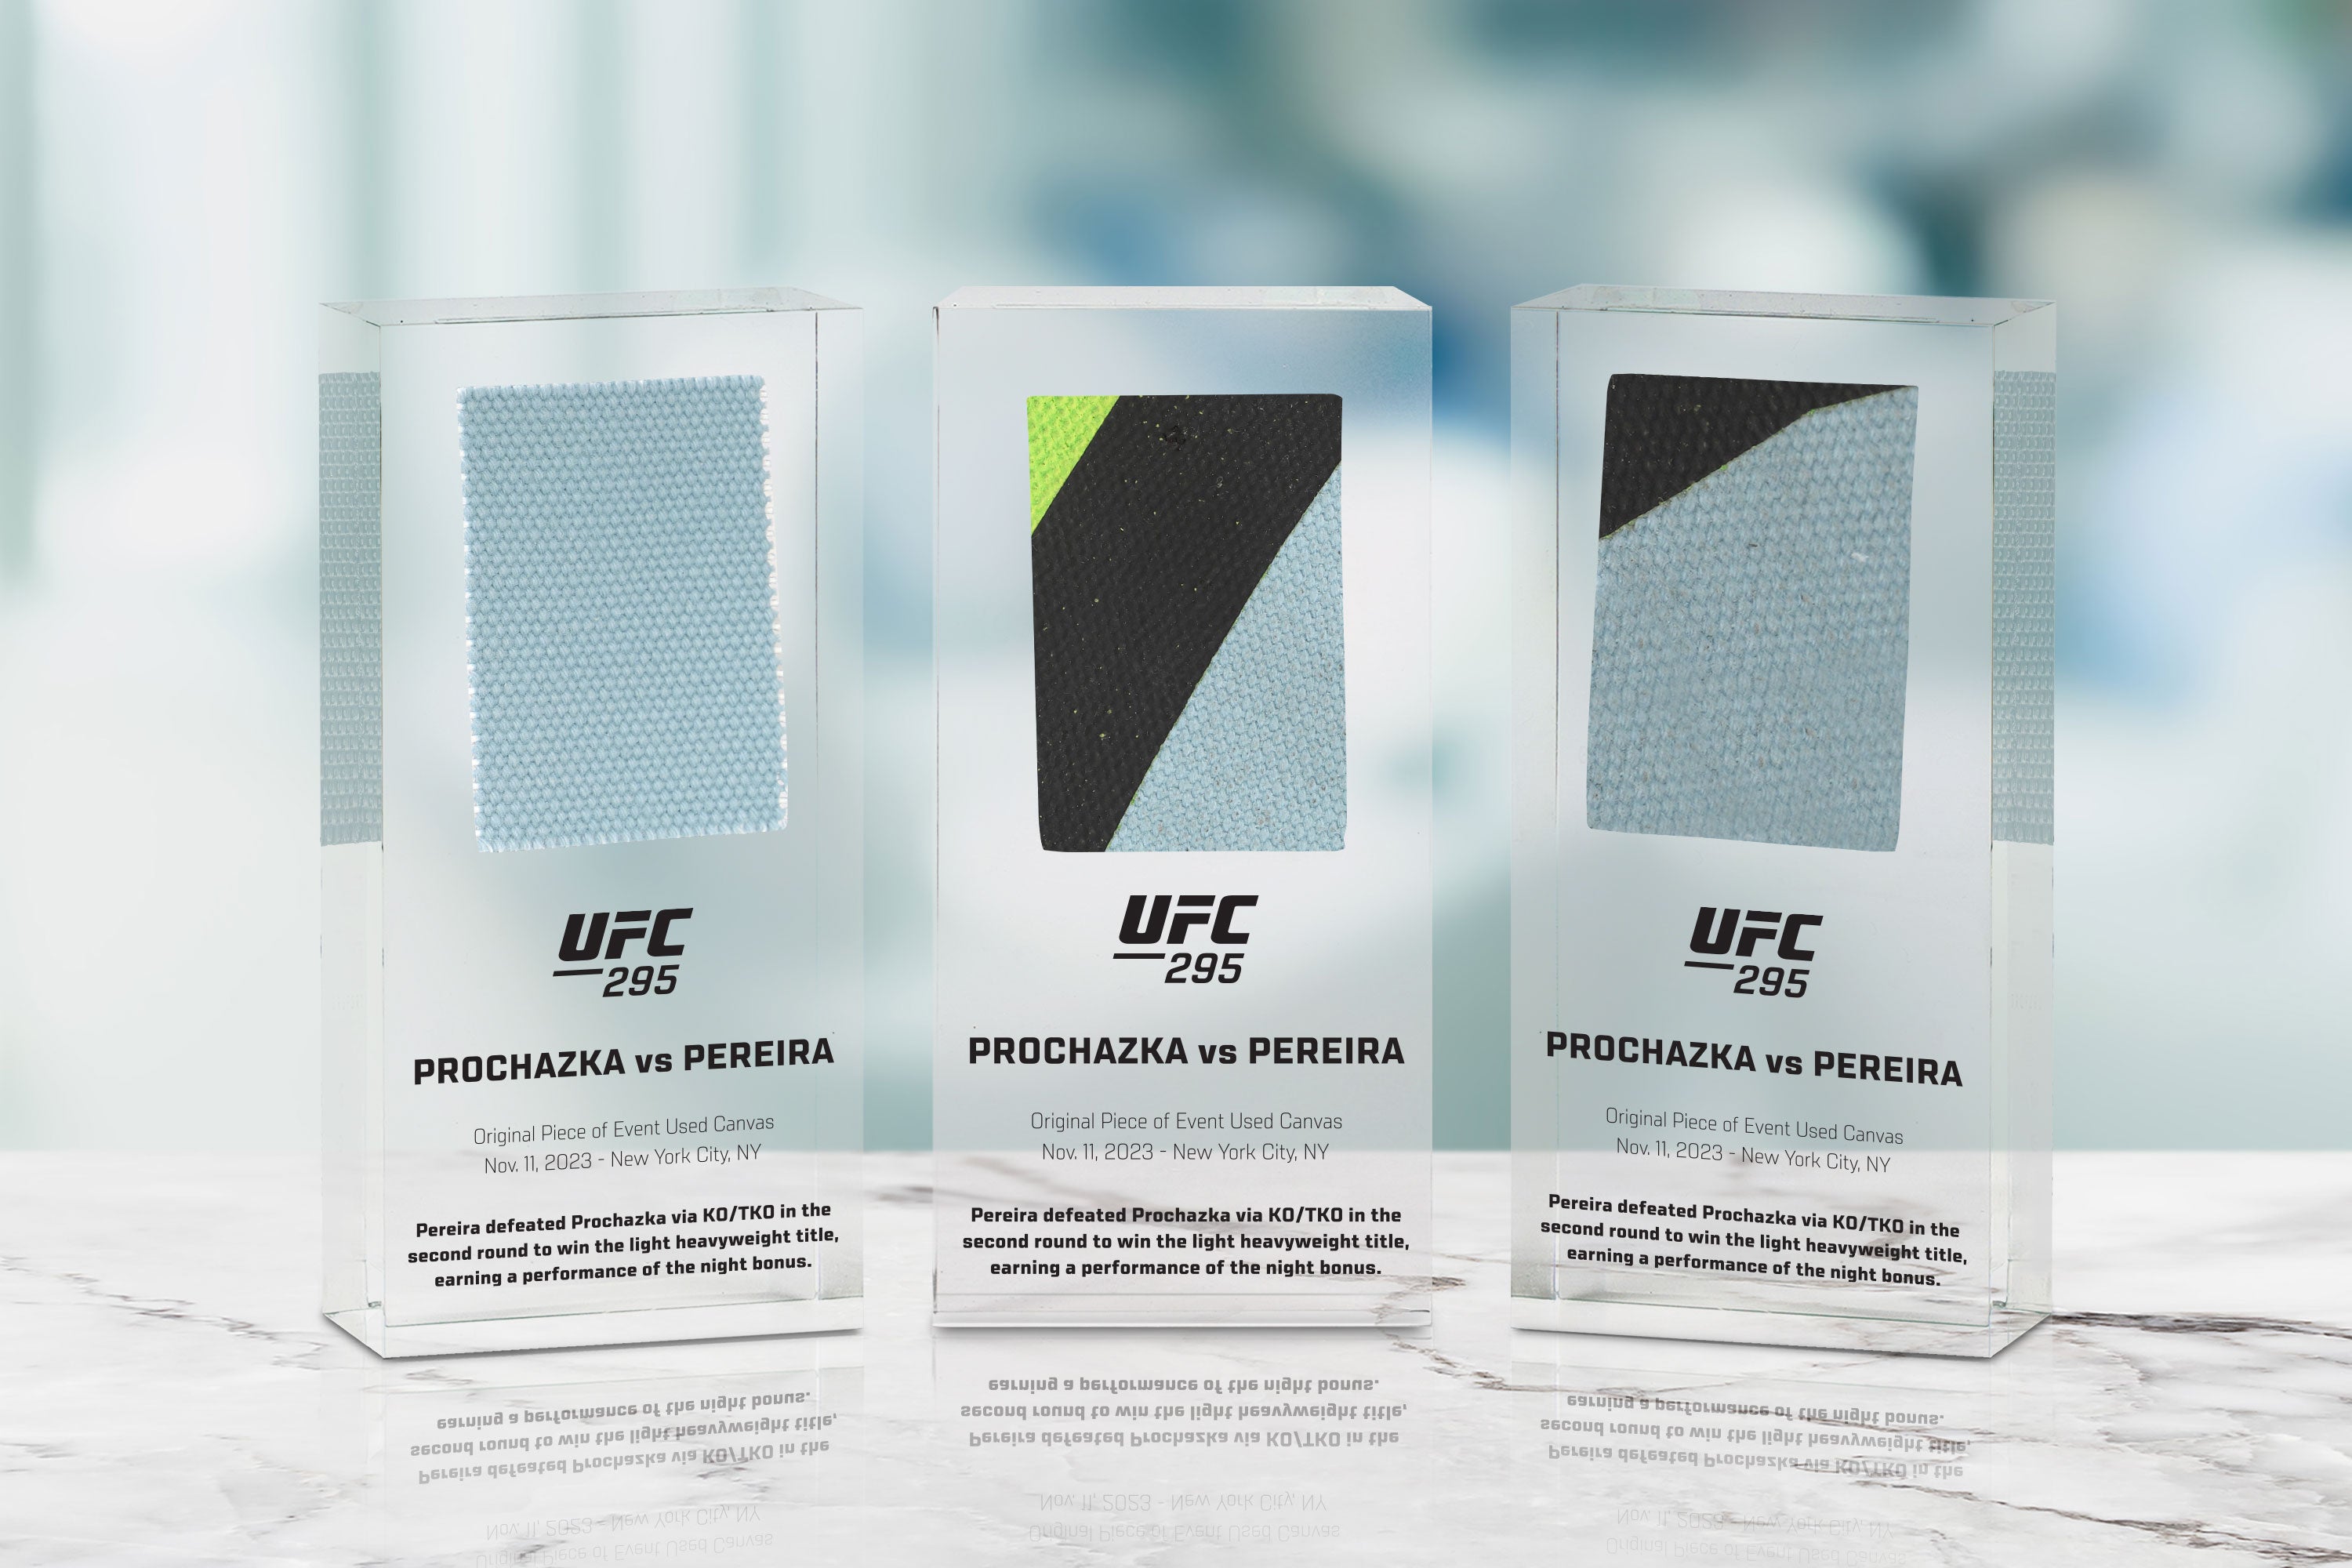 UFC 295 Jones vs Miocic Canvas in Acrylic